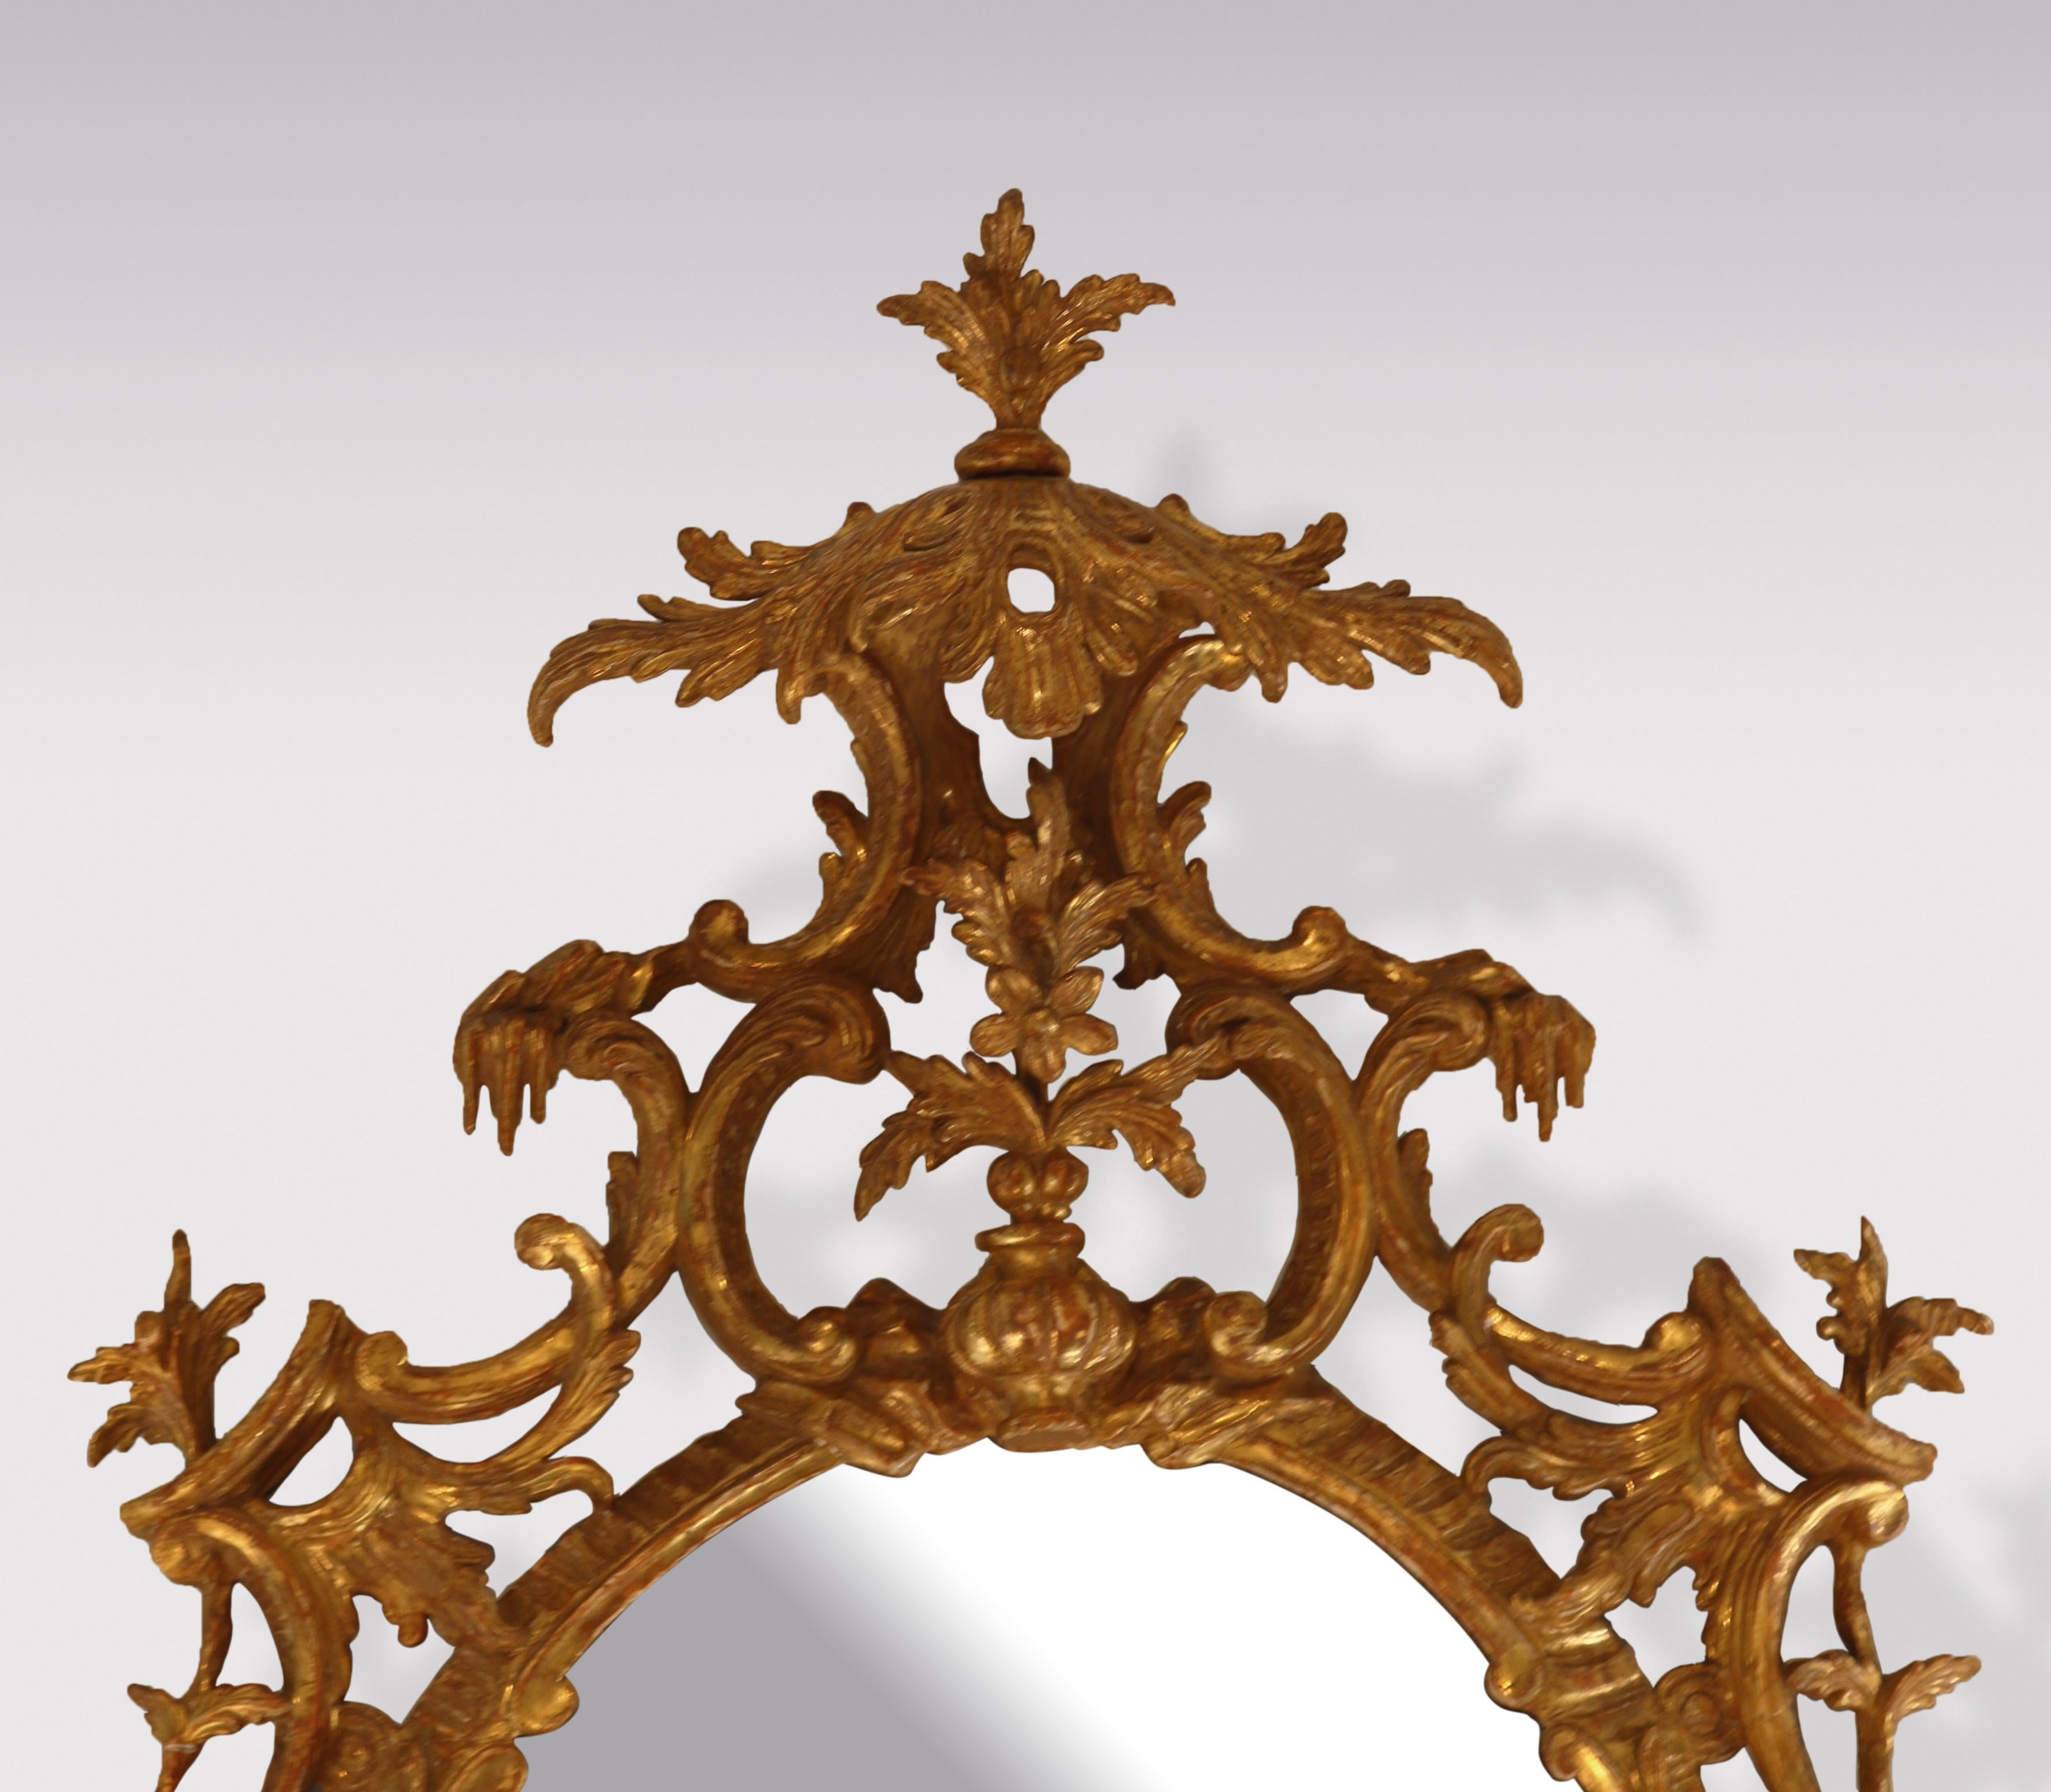 Eine feine Qualität Mitte des 18. Jahrhunderts Chippendale Zeitraum oval geschnitzt vergoldet Spiegel mit Blatt Baldachin Kartusche über Vase mit Blumen. Der Spiegel mit aufwändiger 